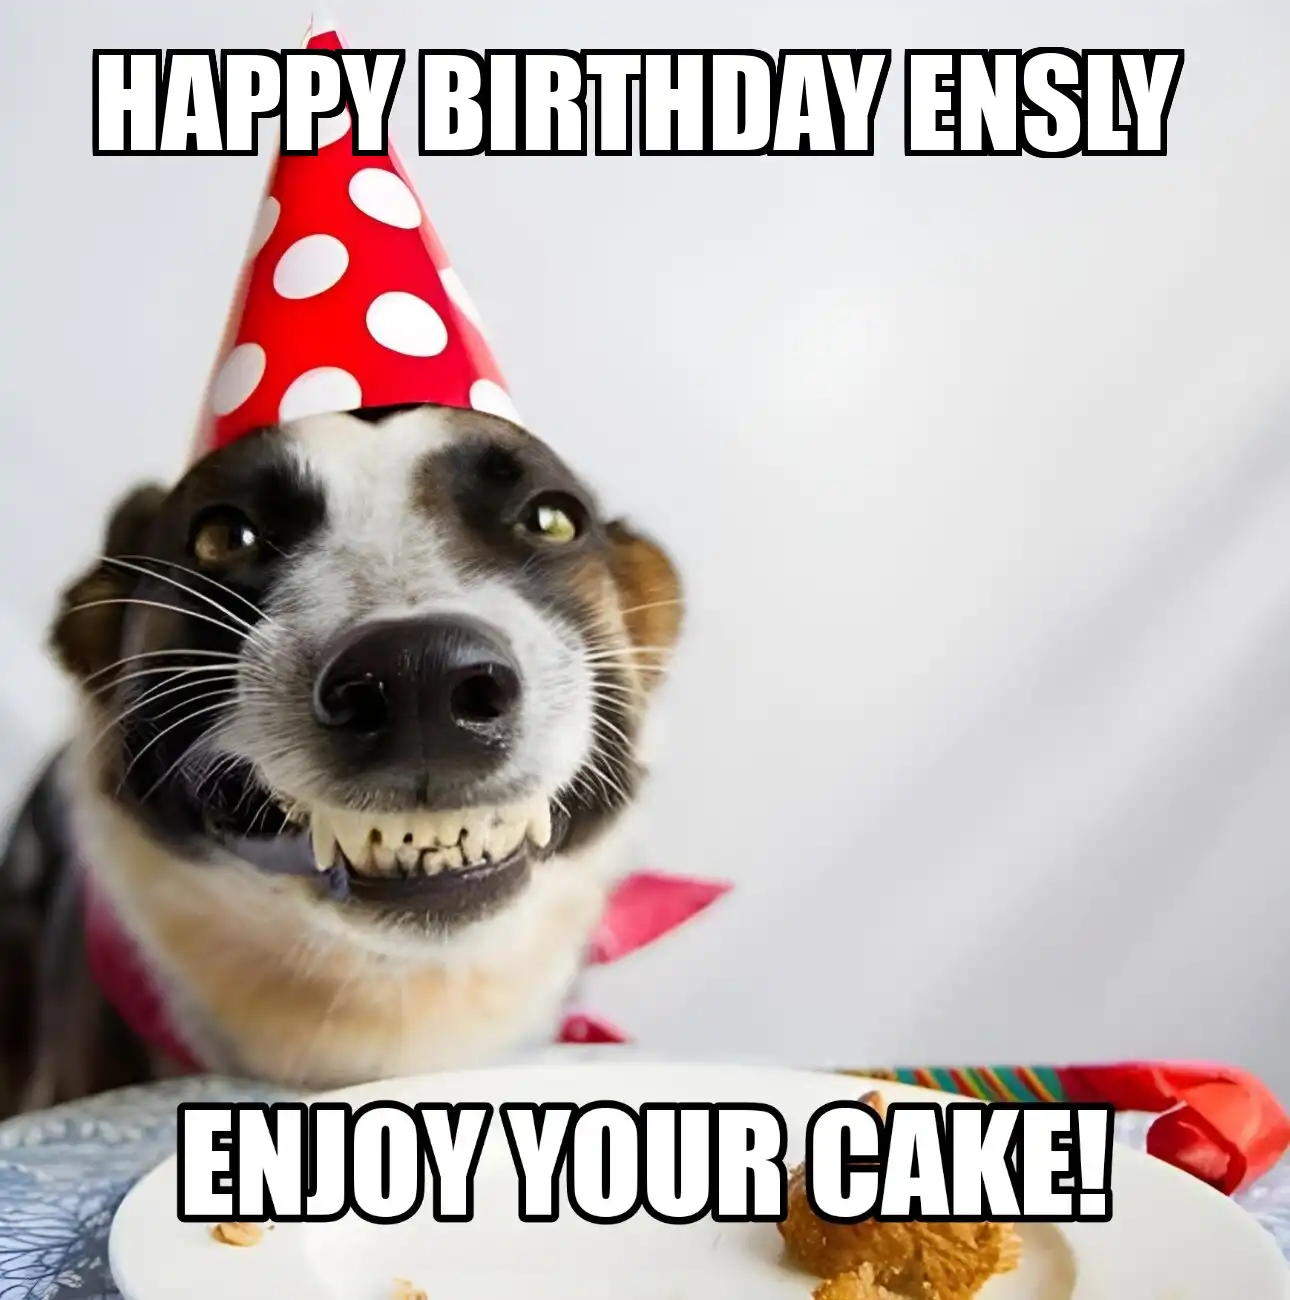 Happy Birthday Ensly Enjoy Your Cake Dog Meme